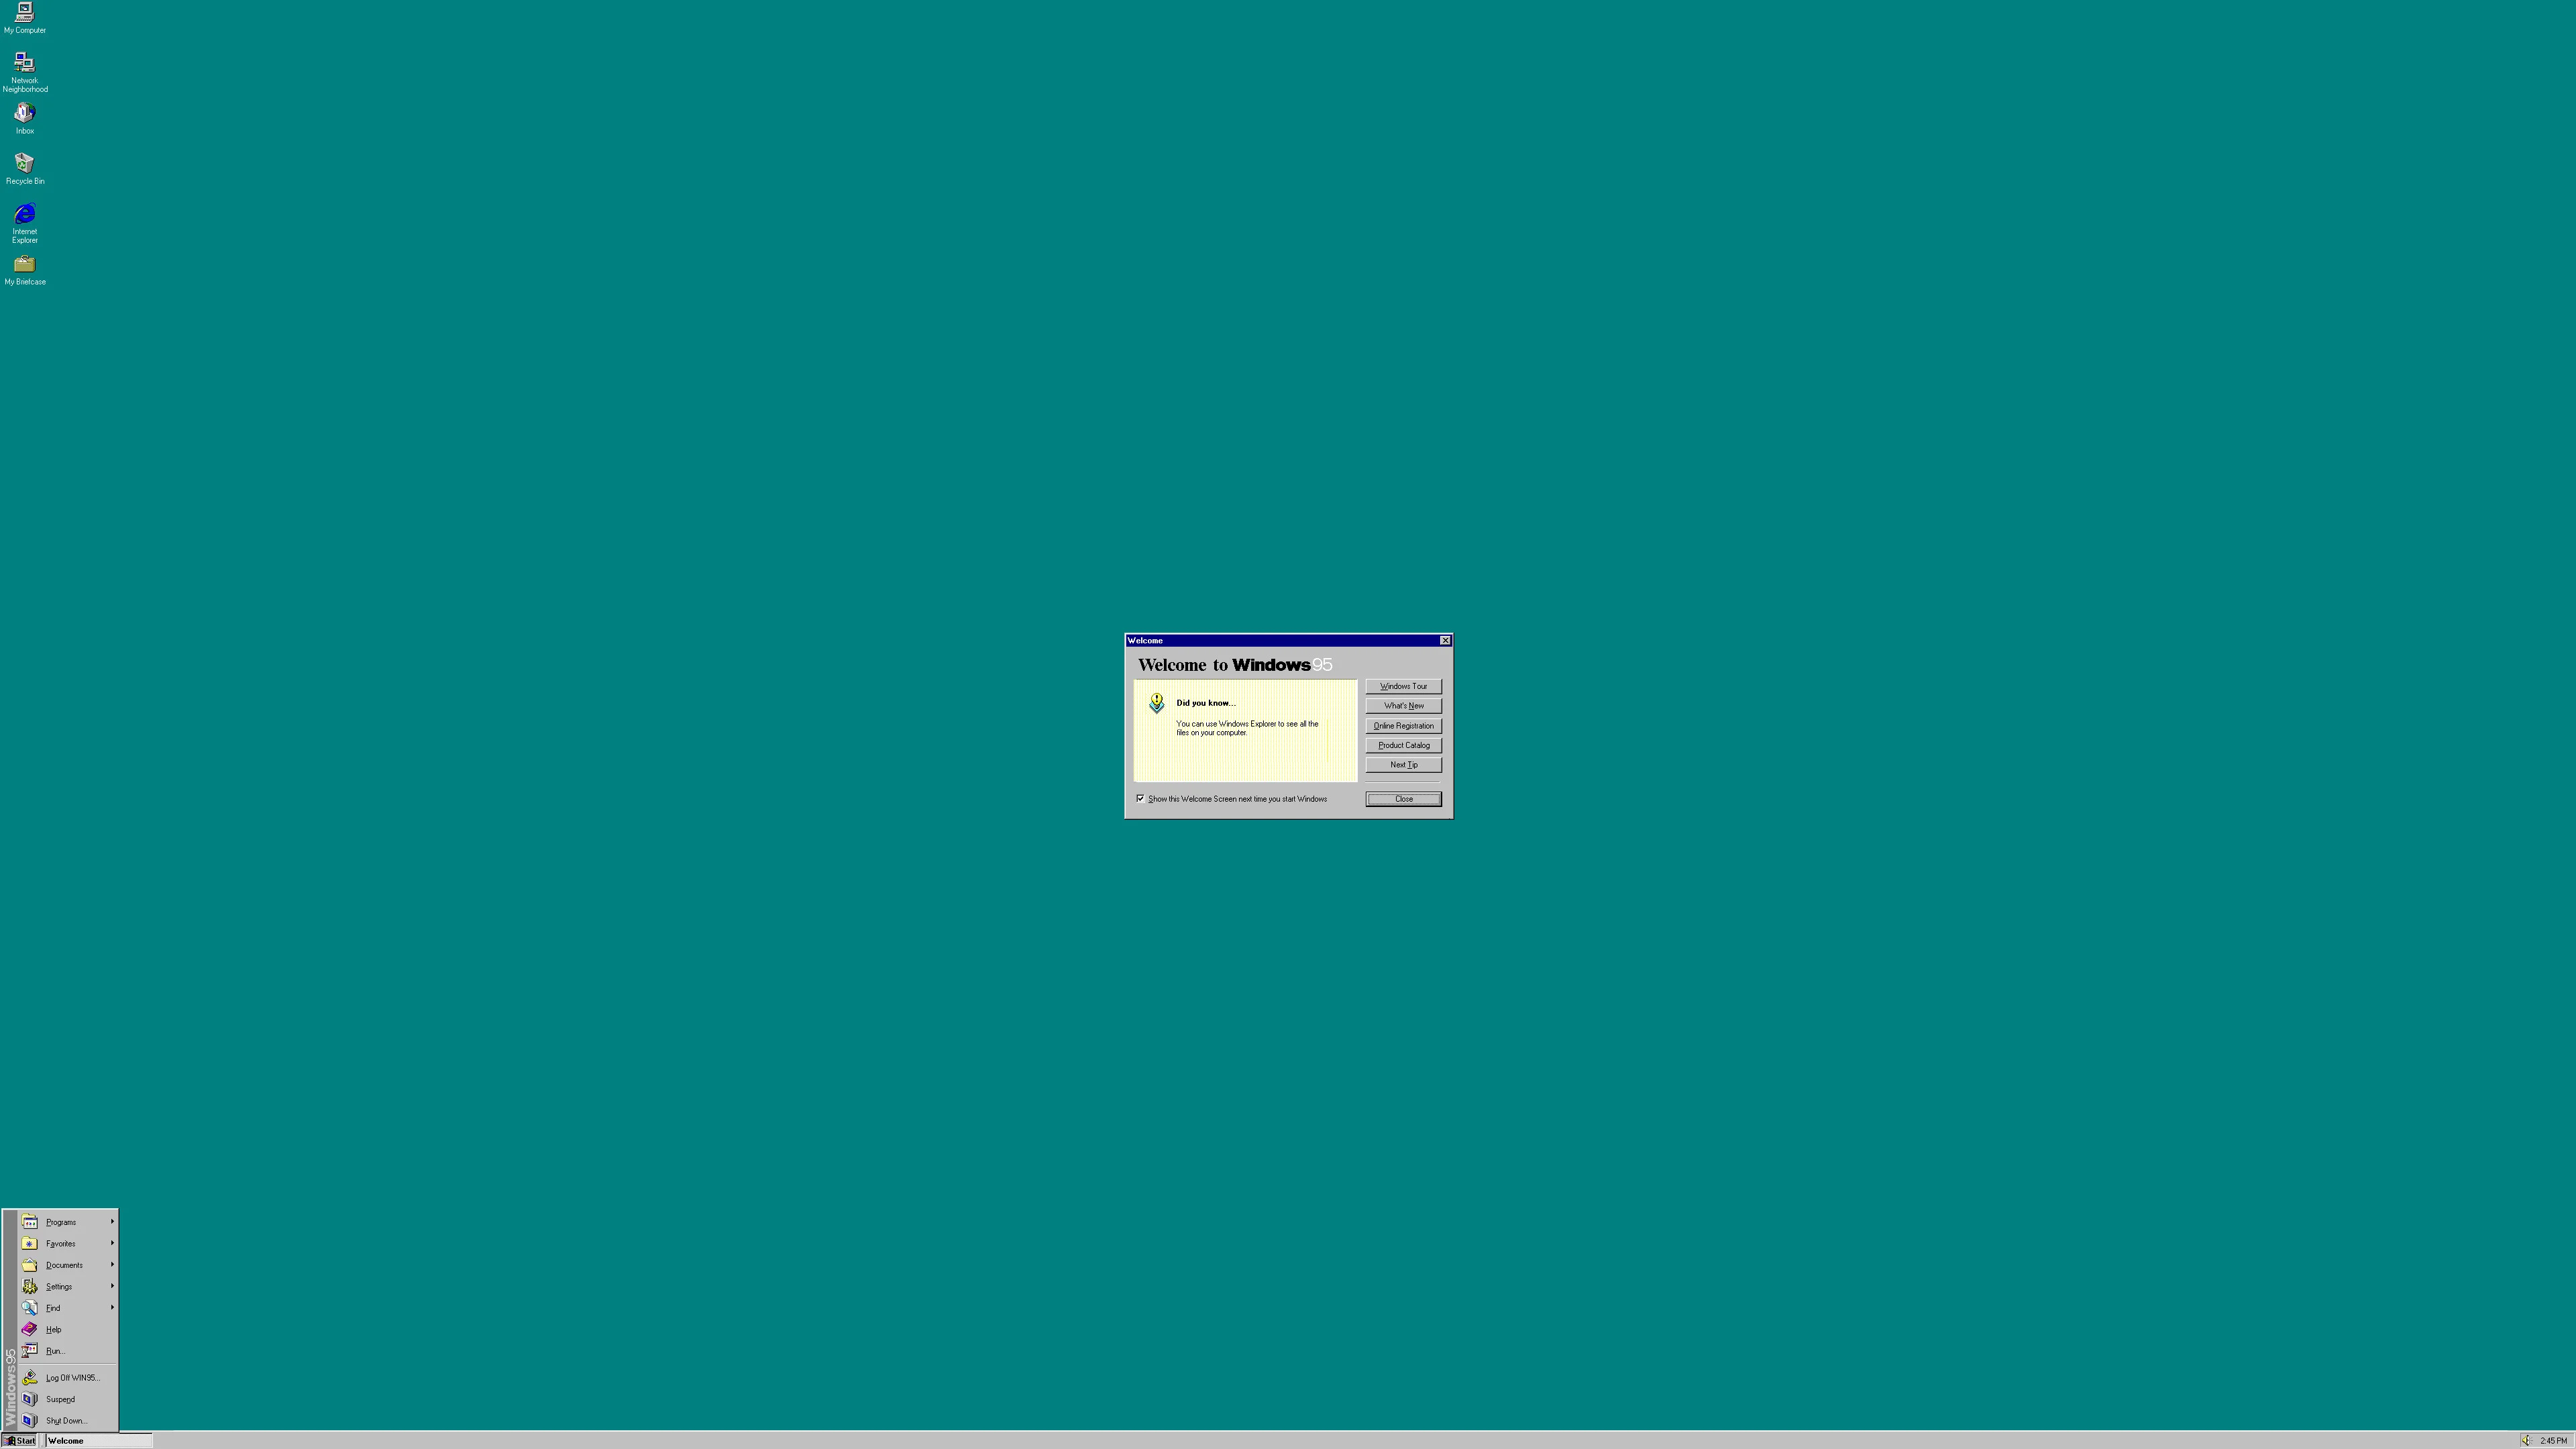 Hình nền cho desktop Windows 95 sẽ khiến bạn trở về những kỷ niệm ngày học cấp 3 của mình. Chúng rất đơn giản nhưng lại đầy cảm xúc và được lưu giữ trong thời gian dài. Hãy xem hình ảnh liên quan để cảm nhận nó nhé!